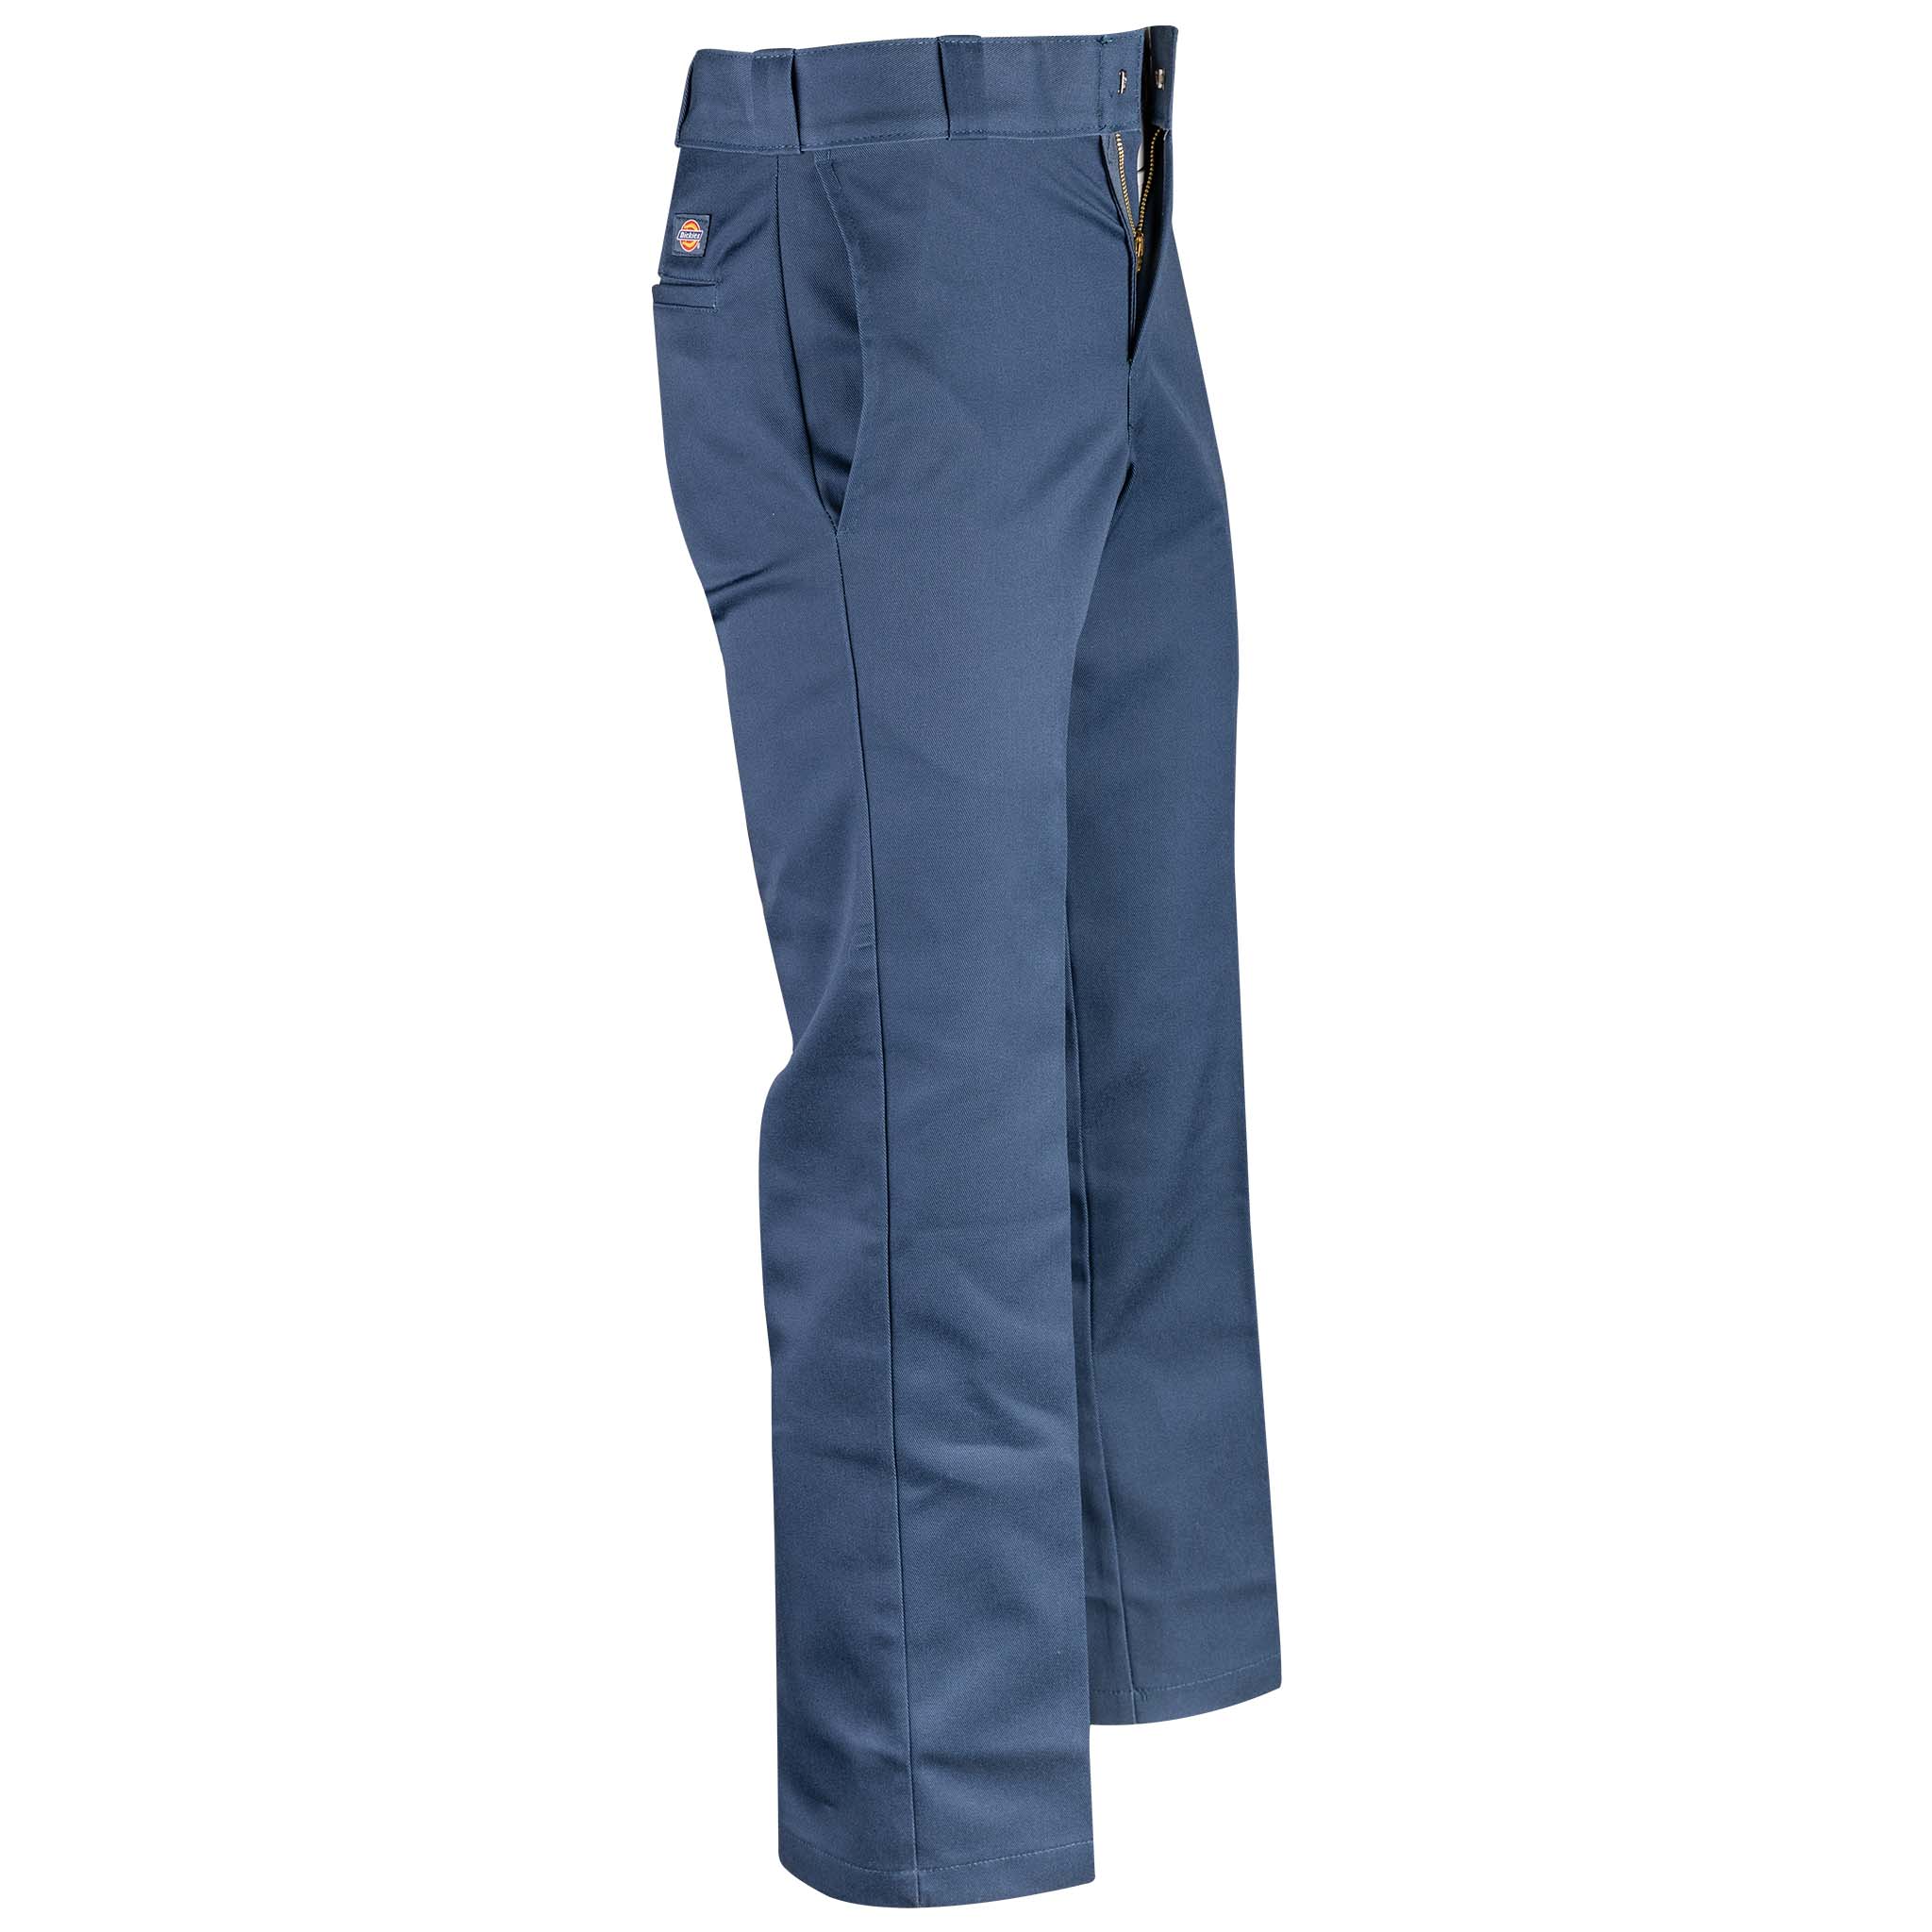 WorkwearMen's Single Pleat Work Trouser